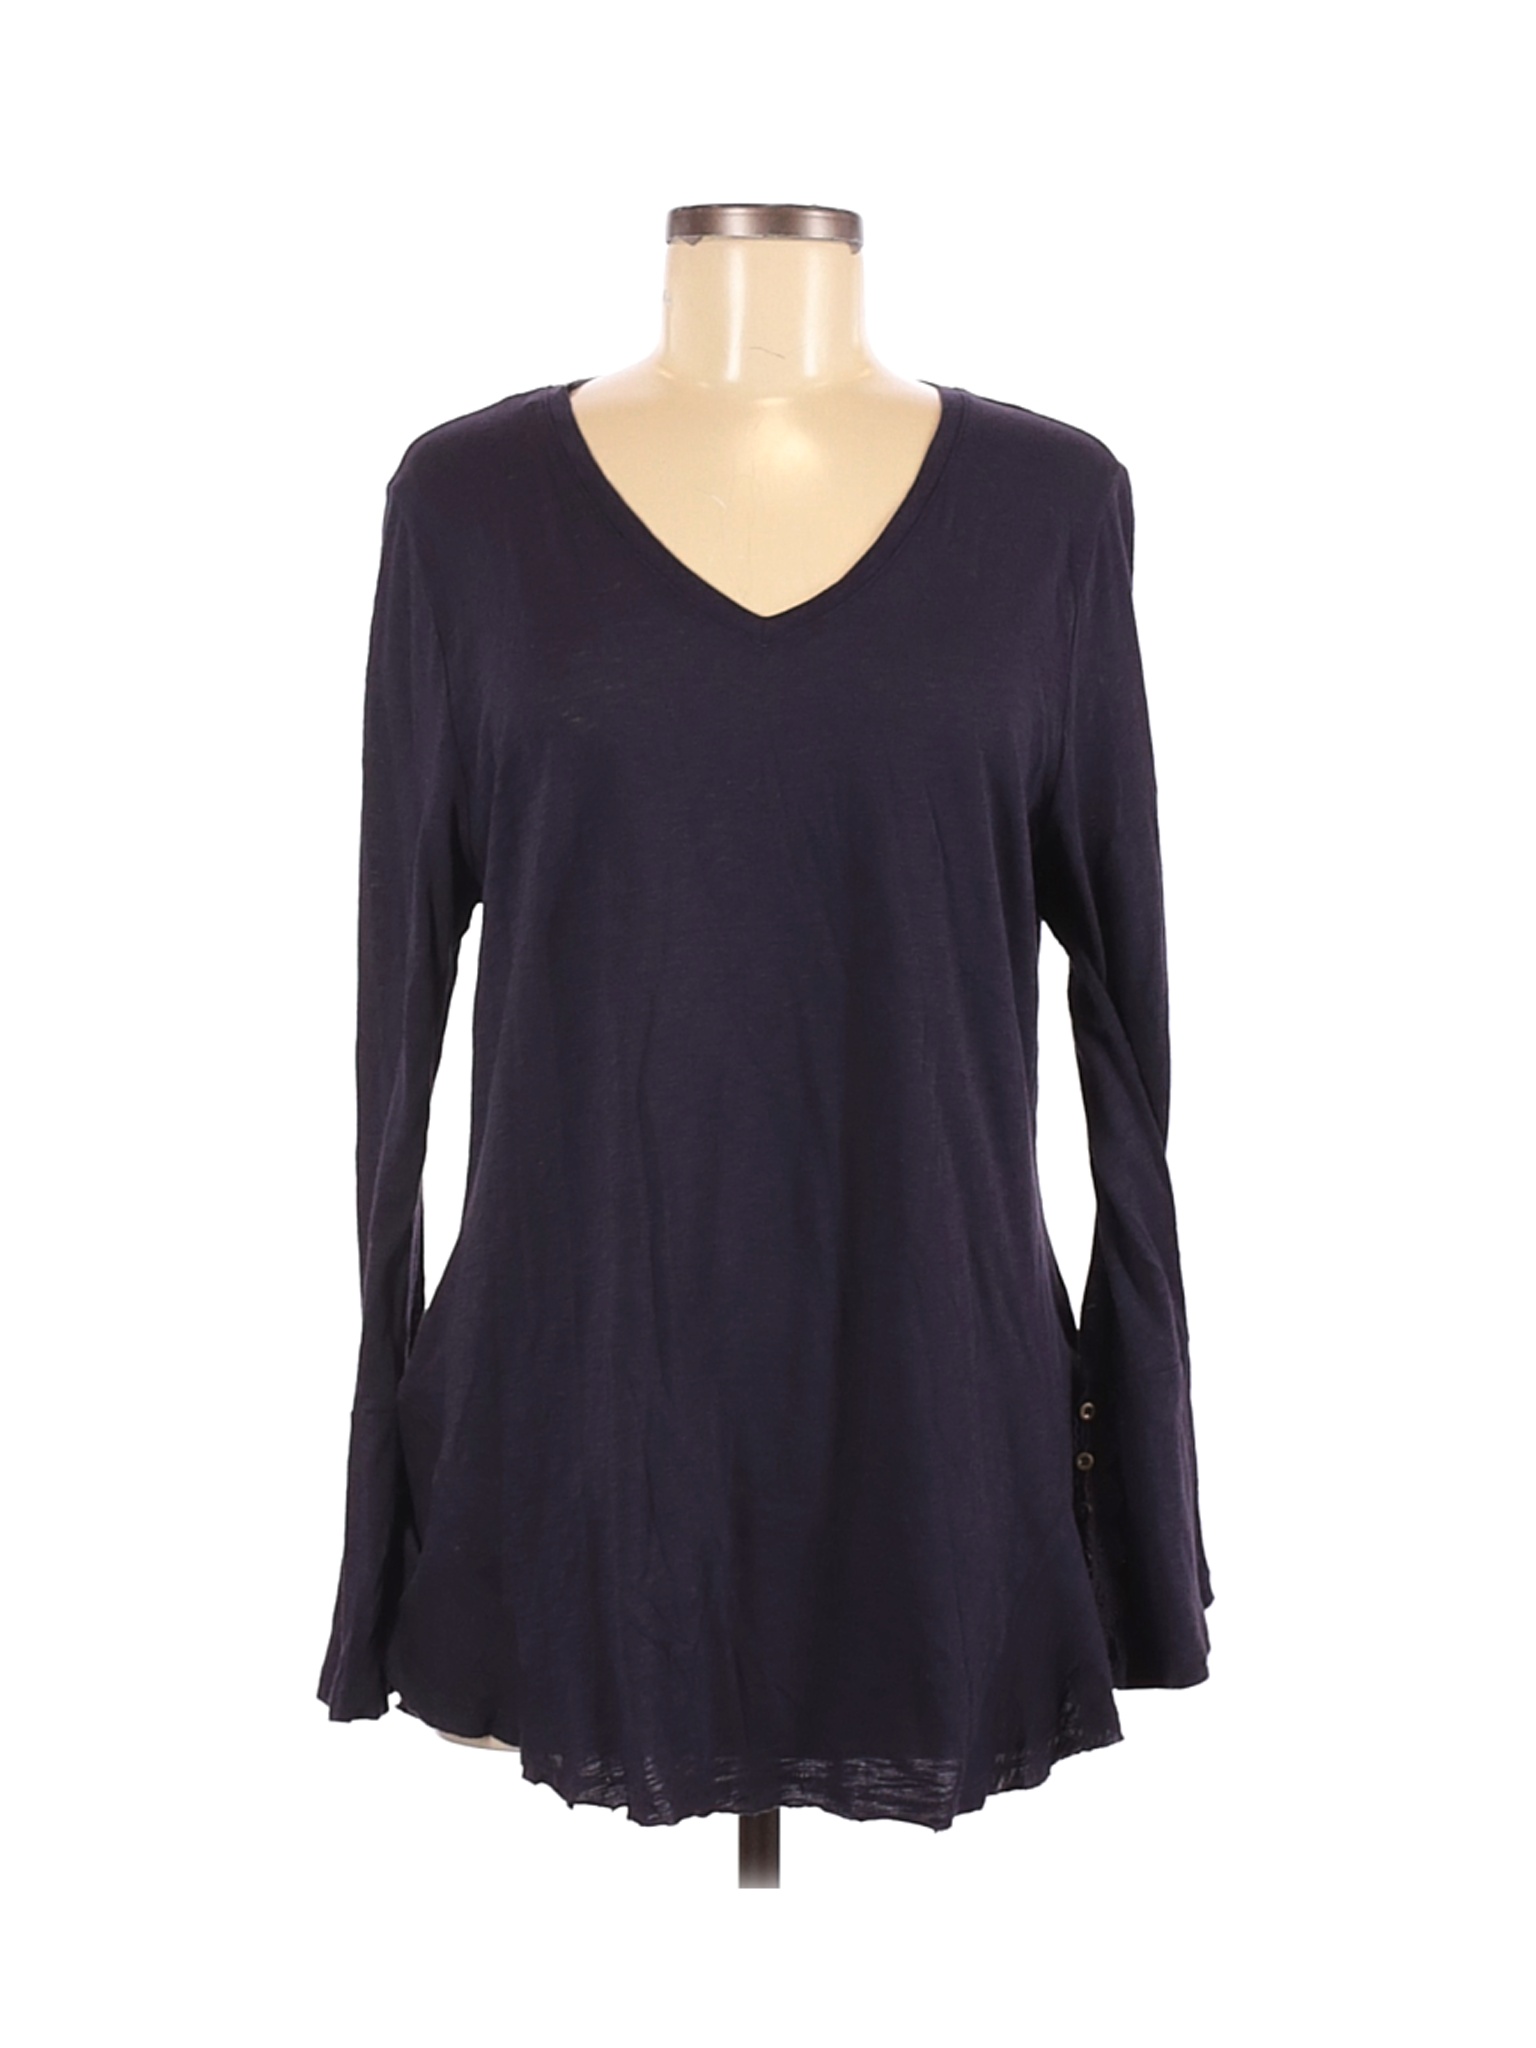 Style&Co Women Purple Long Sleeve T-Shirt L | eBay